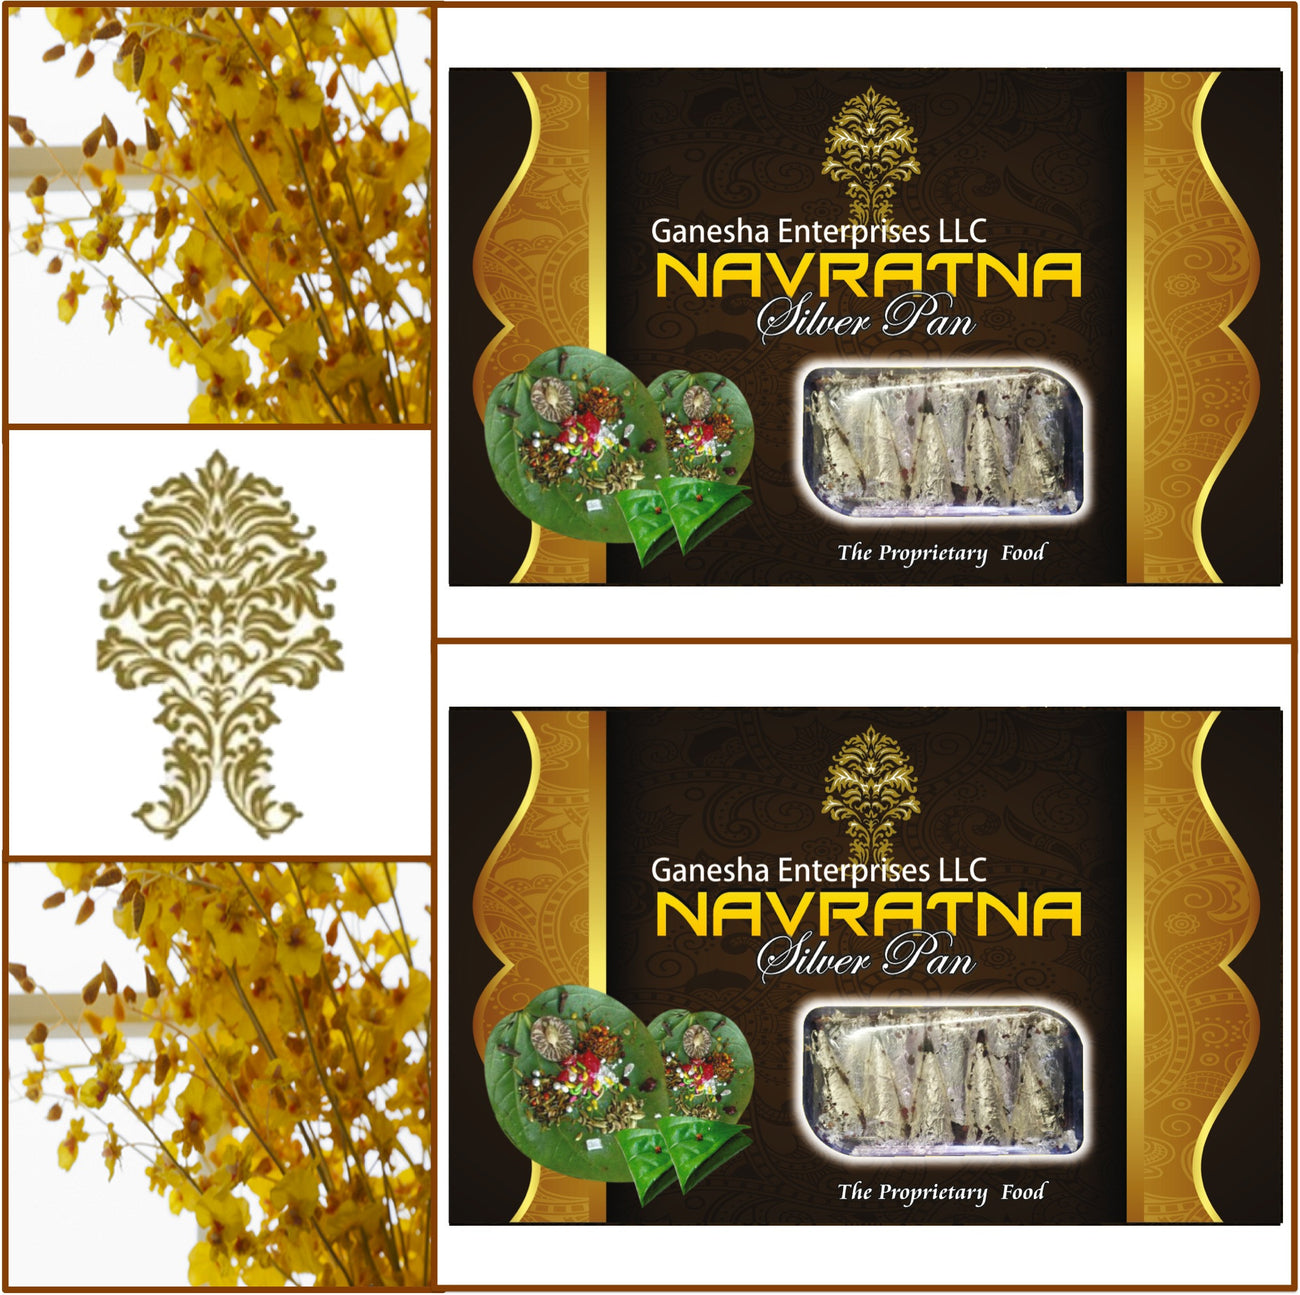 2 Boxes Navratna Silver Pan (Paan) 10 Pieces Each - Total 20 Pieces